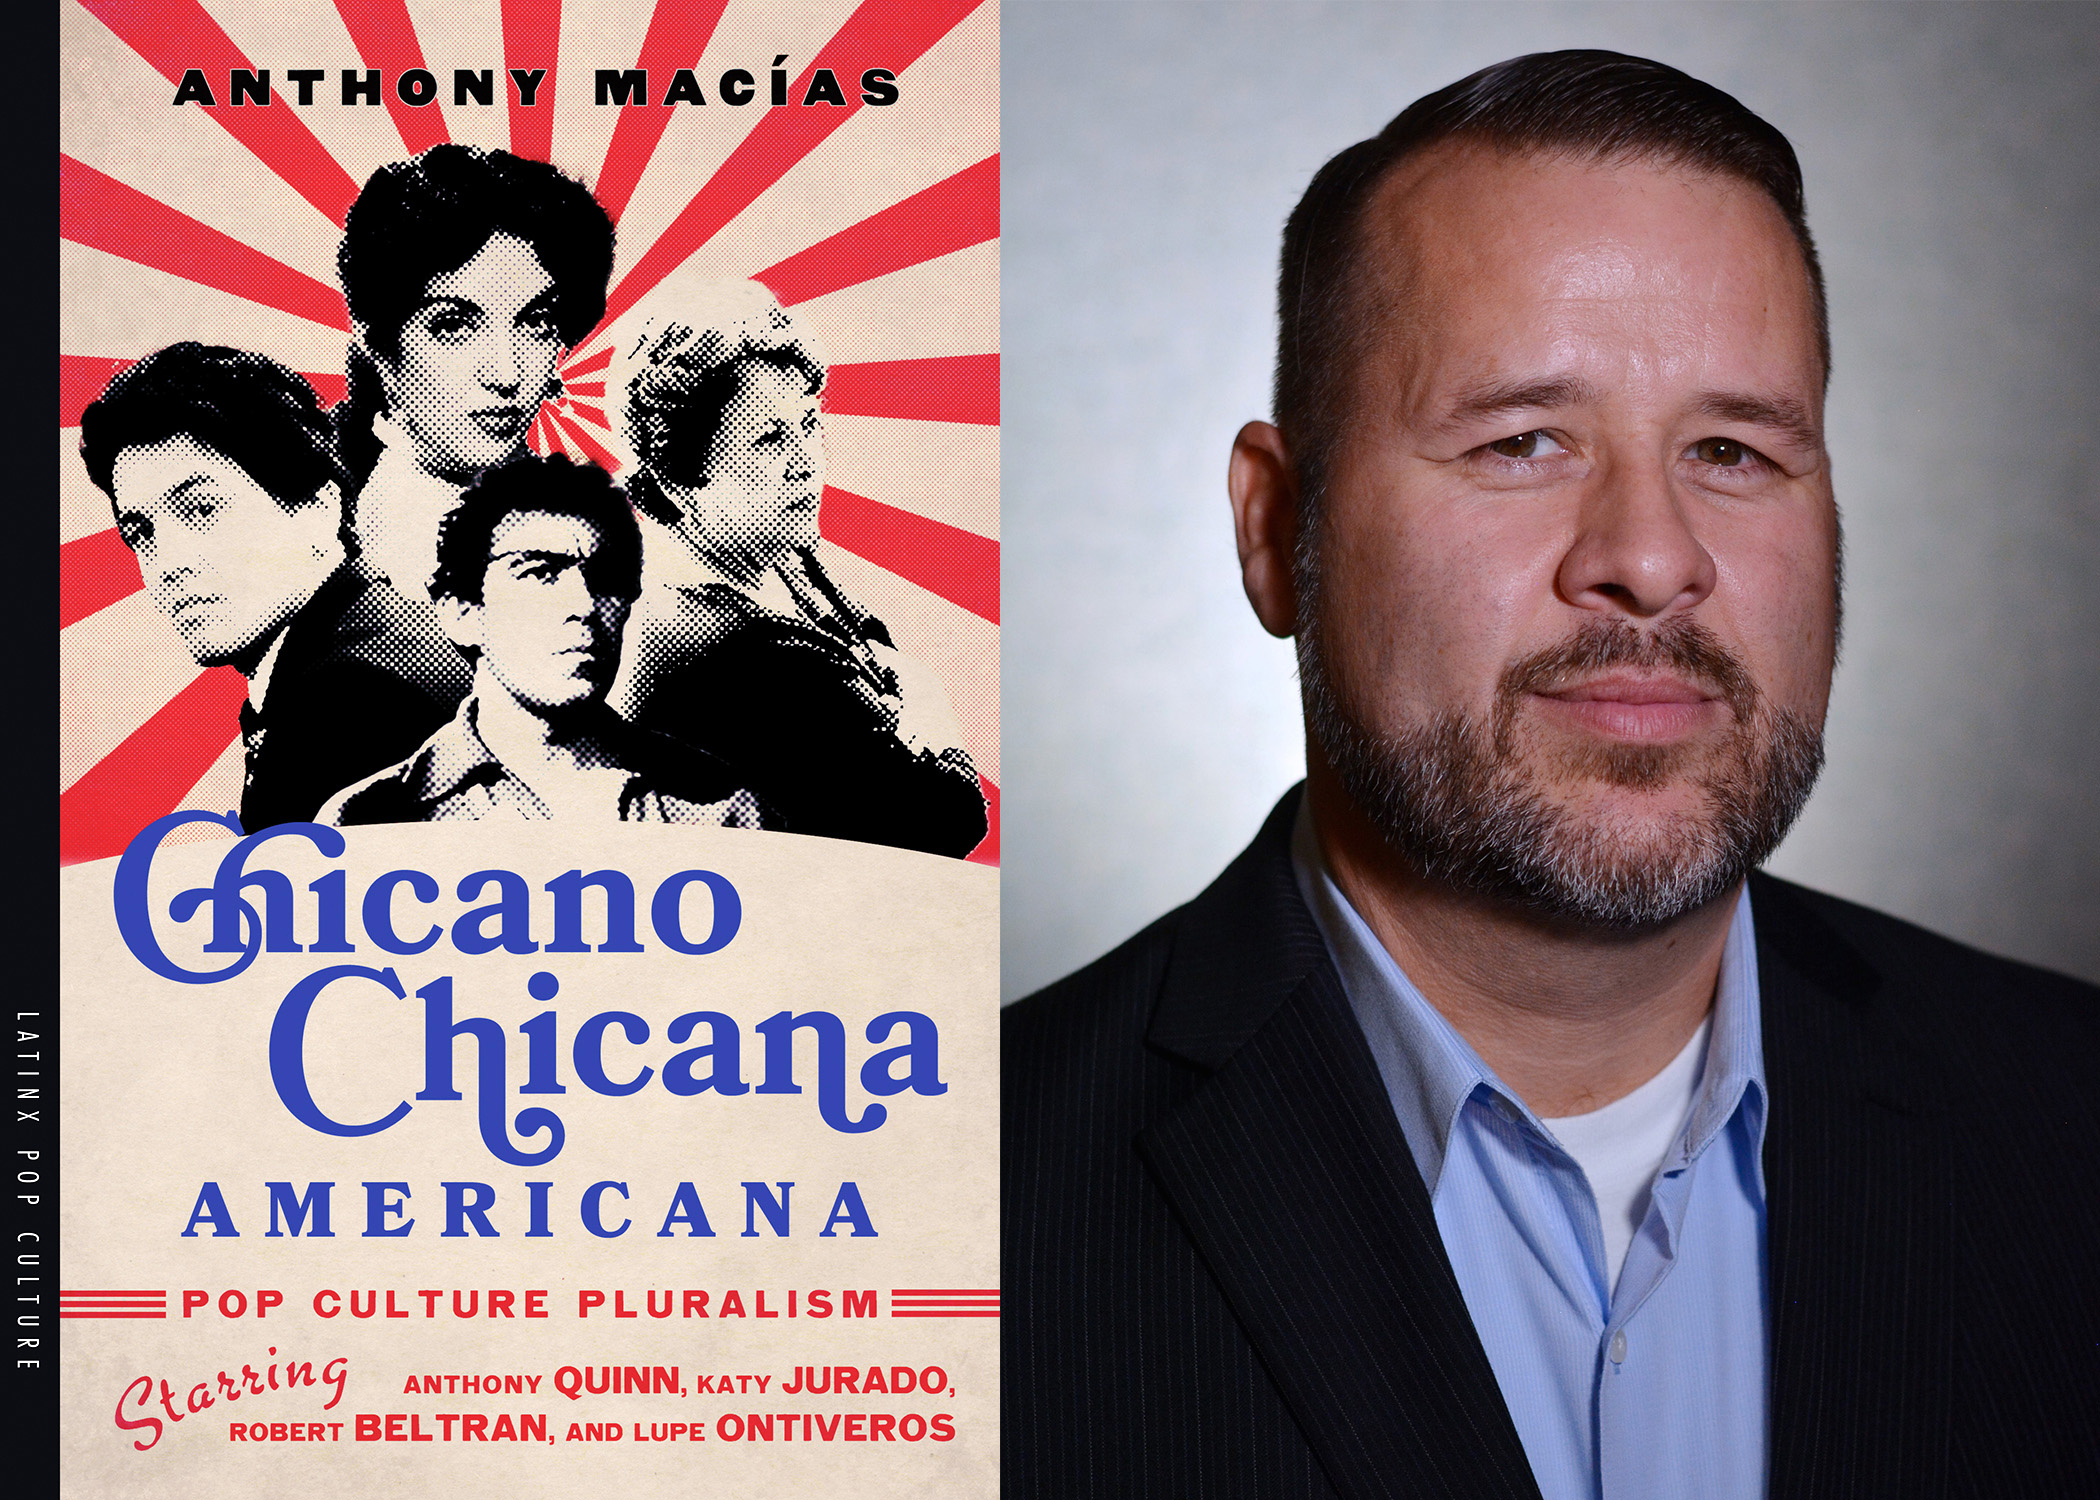 Chicano Chicana book cover and author Macias